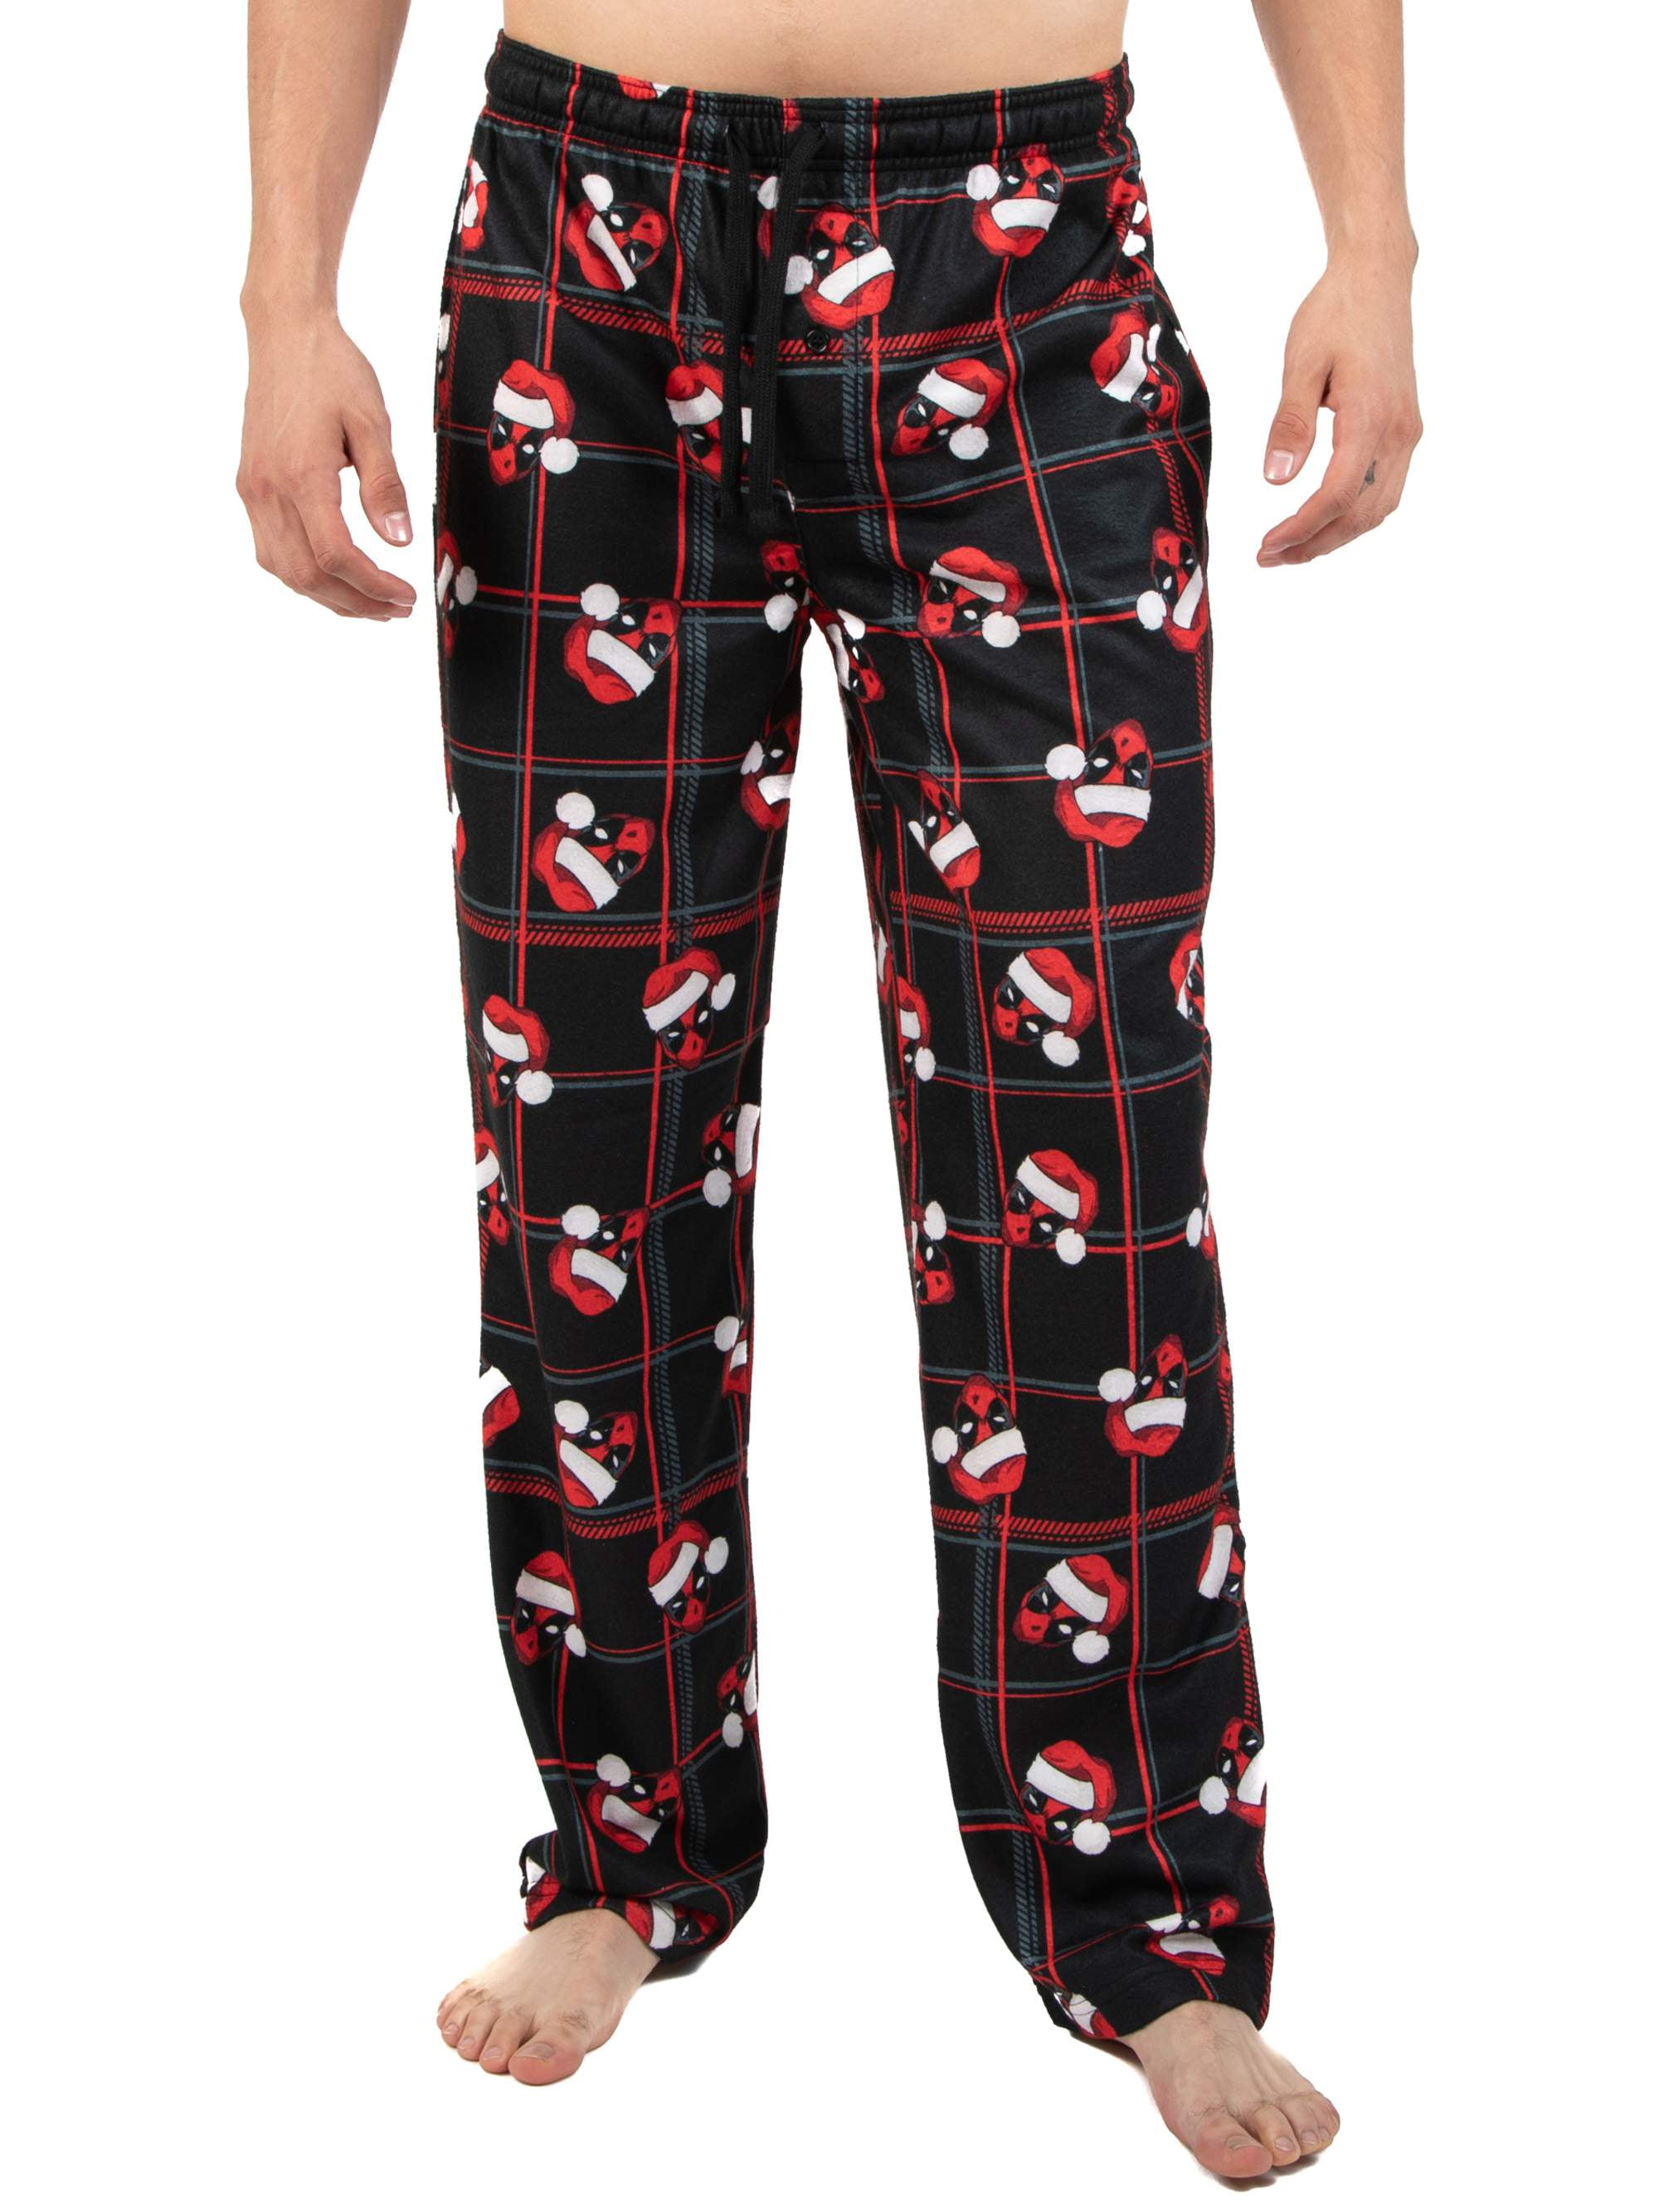 Pijamas Hombre Diseno Deadpool Marvel Pijama Hombre Conjunto 2 Piezas Camiseta y Pantalon Largo Merchandising Oficial Regalos Hombre y Adolescente 